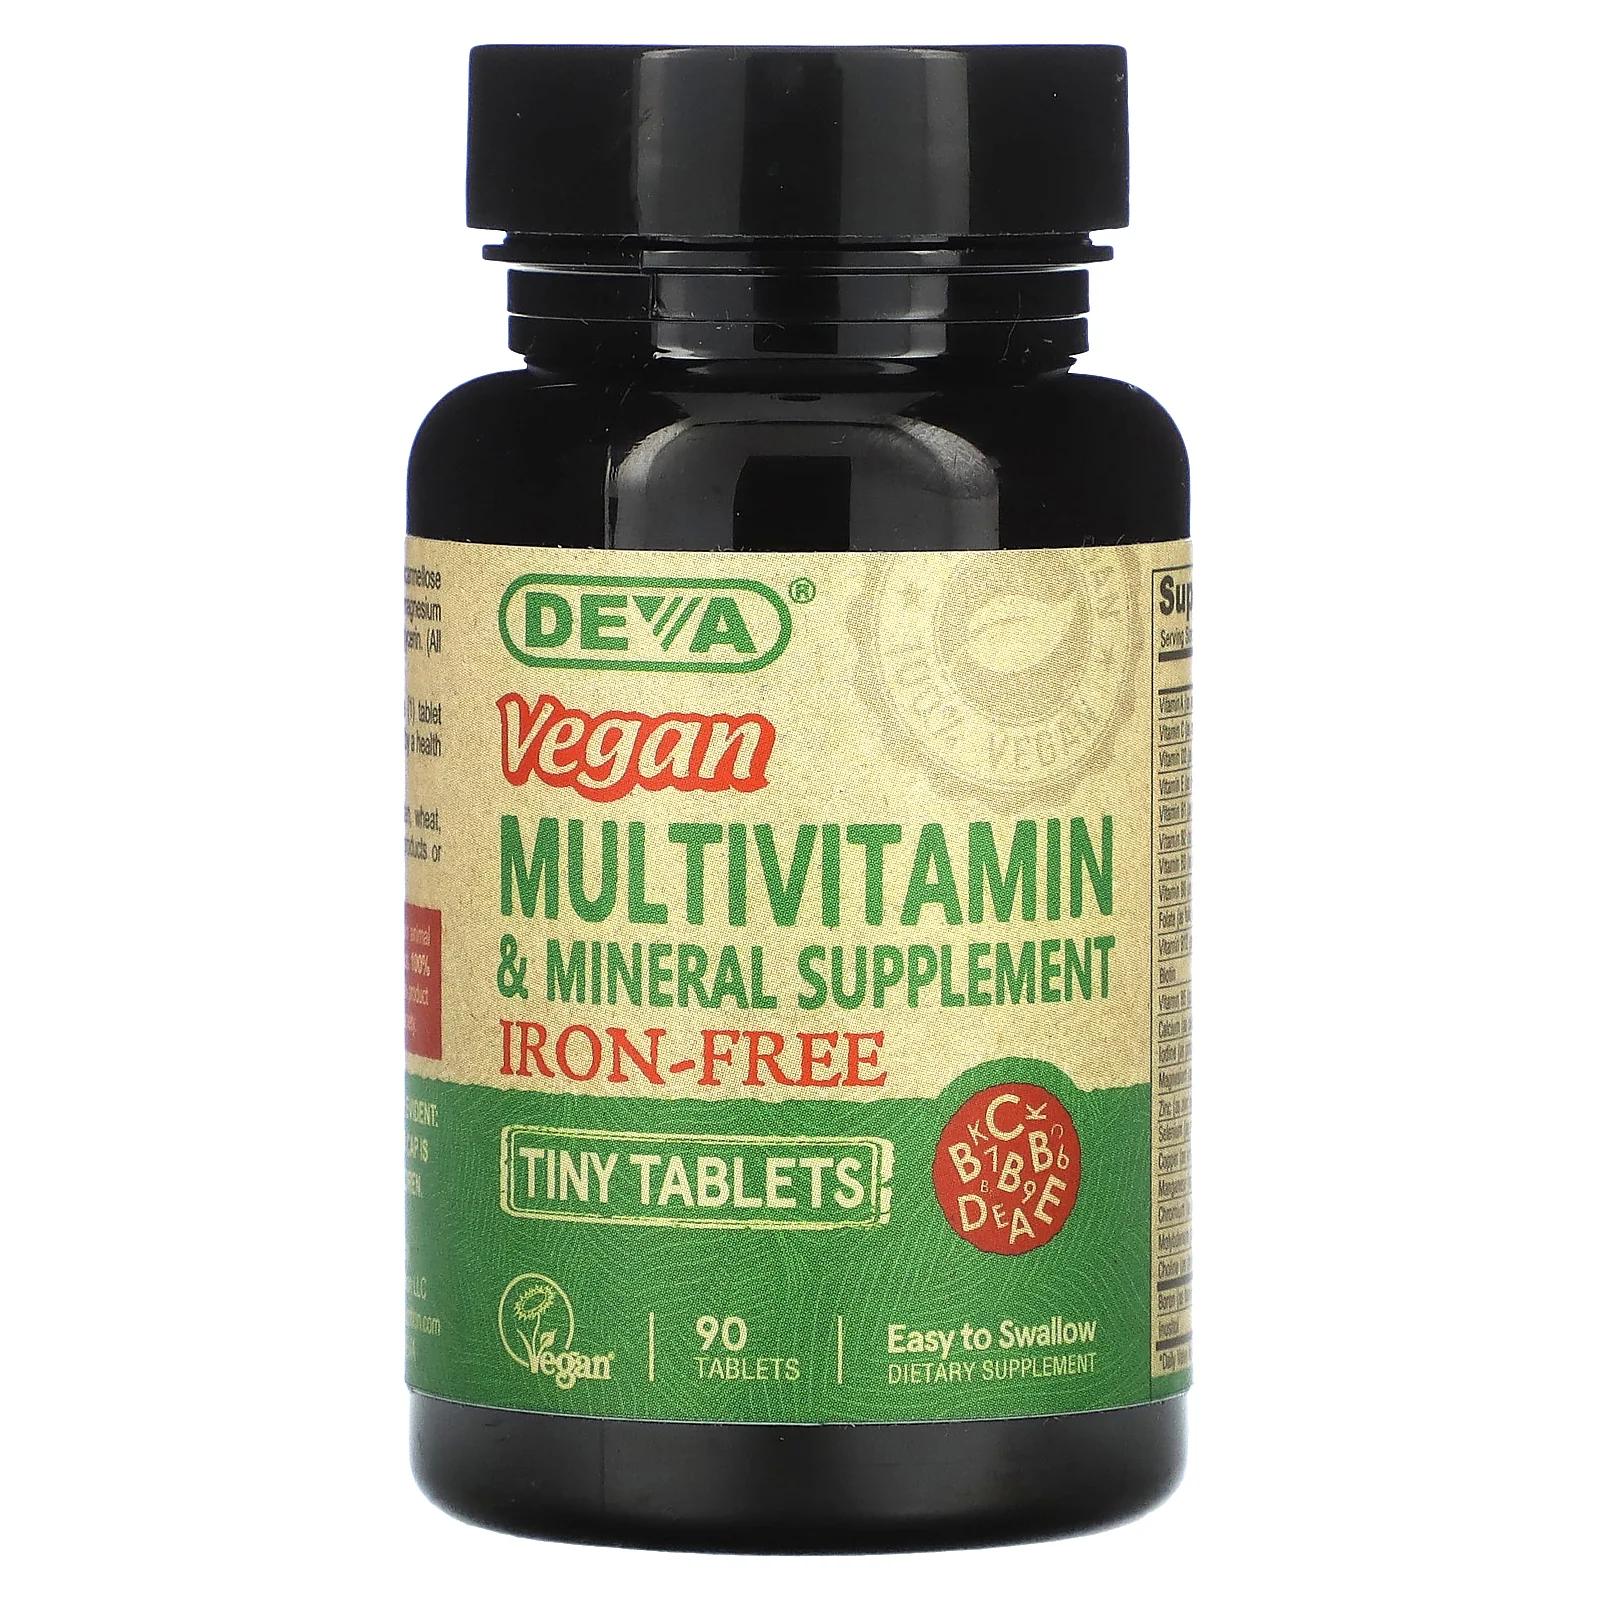 Deva мультивитаминная и минеральная добавка в мини-таблетках для веганов без железа 90 таблеток